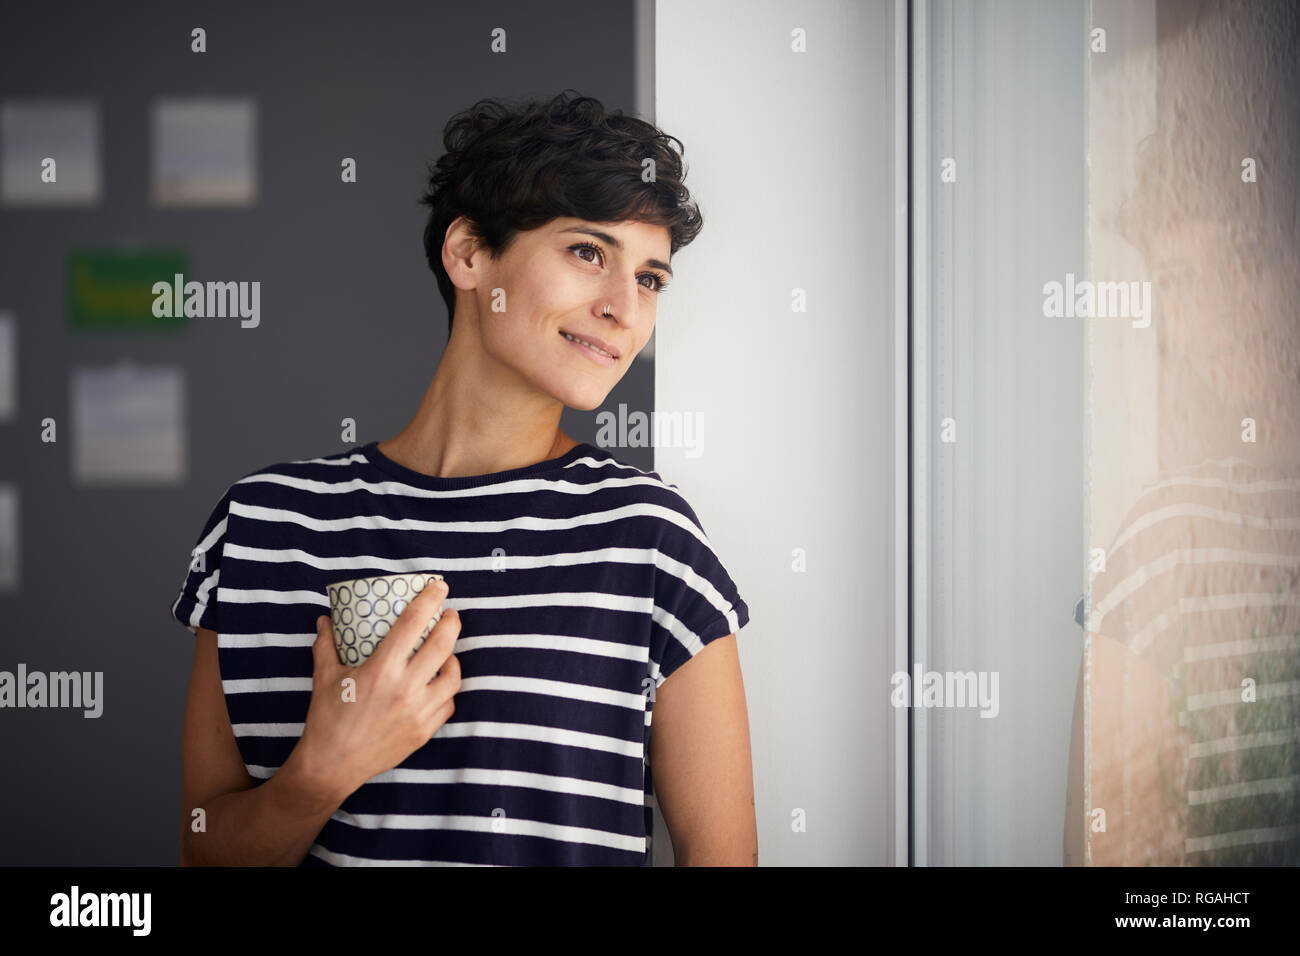 Mujer sonriente con una taza de café mirando hacia afuera de la ventana Foto de stock